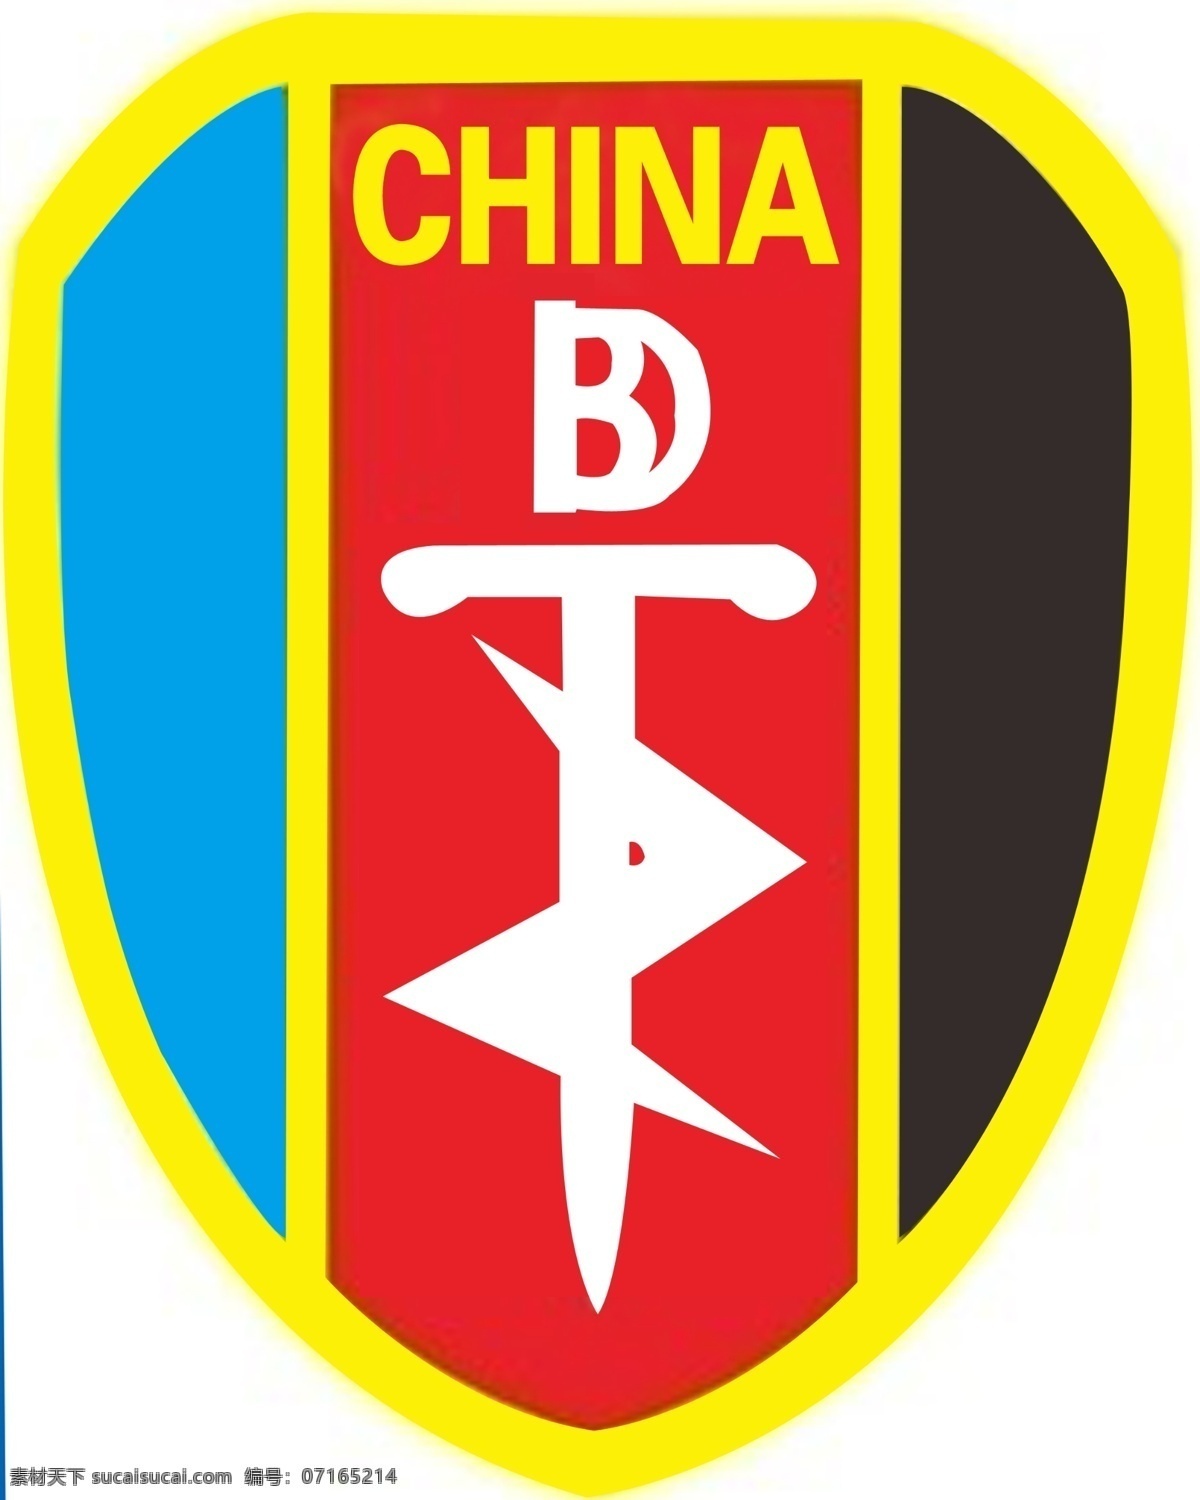 中国特种部队 部队标志 标志设计 广告设计模板 源文件